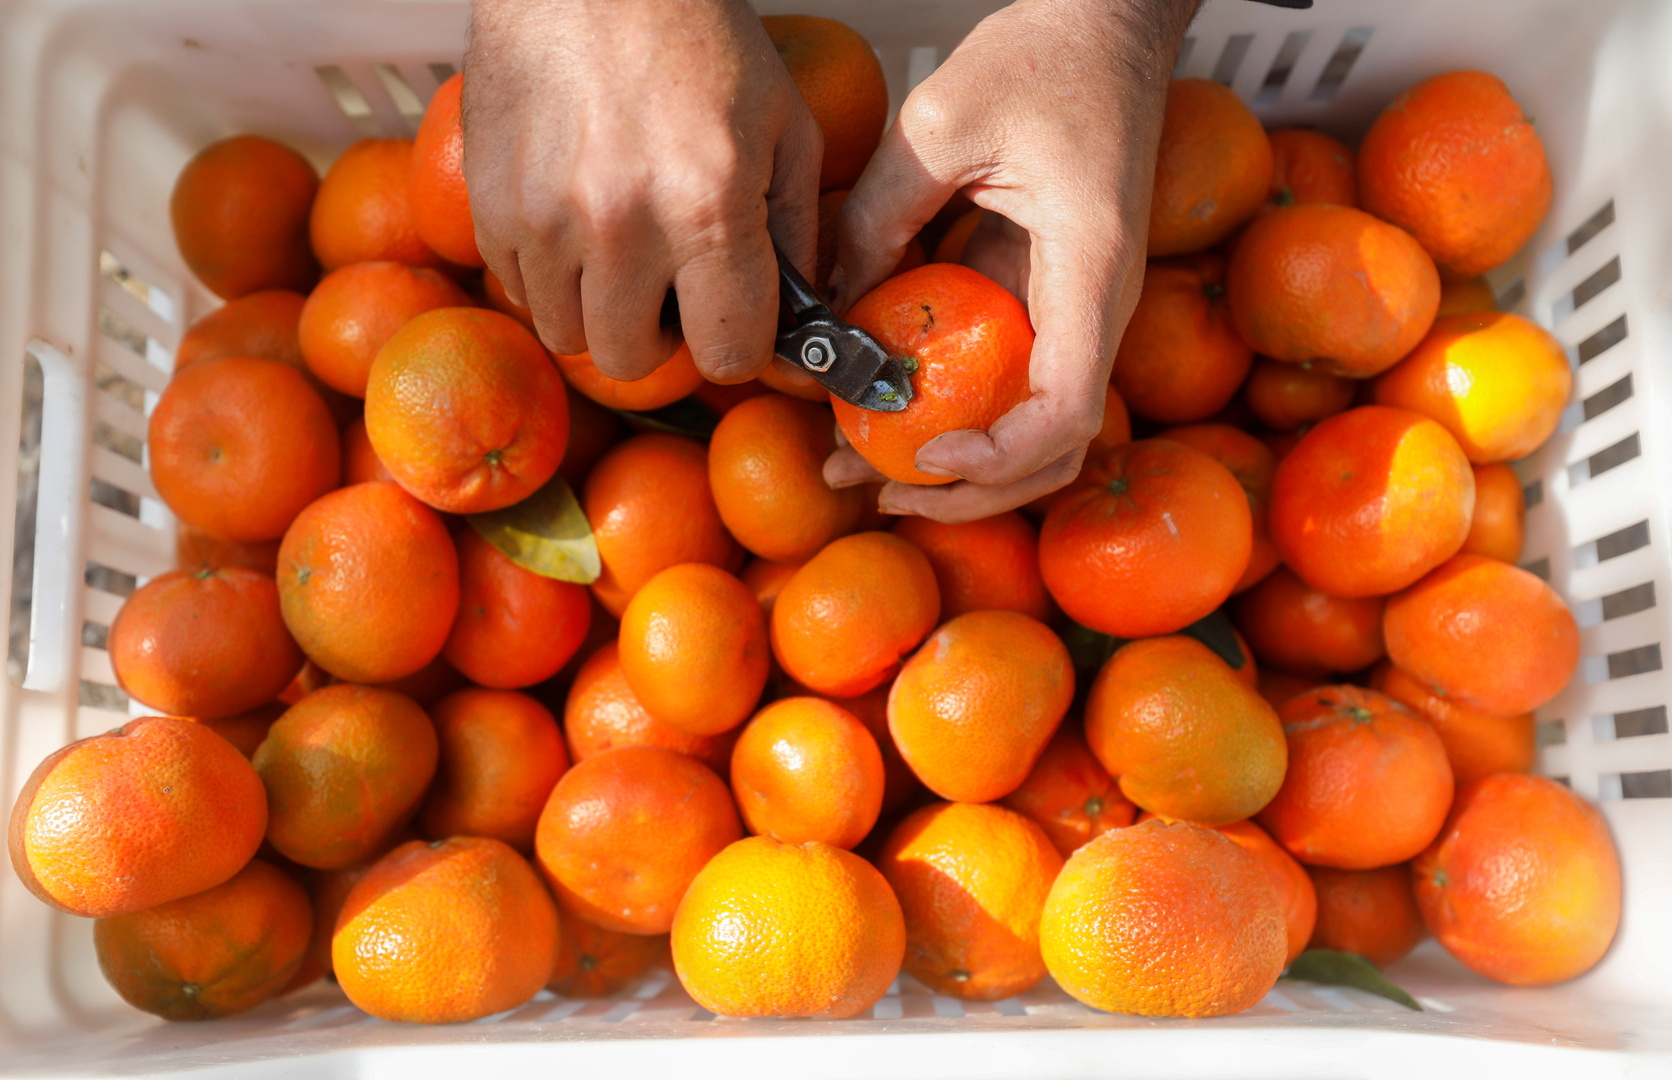 في واقعة مثيرة.. 4 مسافرين يتناولون 30 كيلوغراما من البرتقال قبل انطلاق رحلتهم